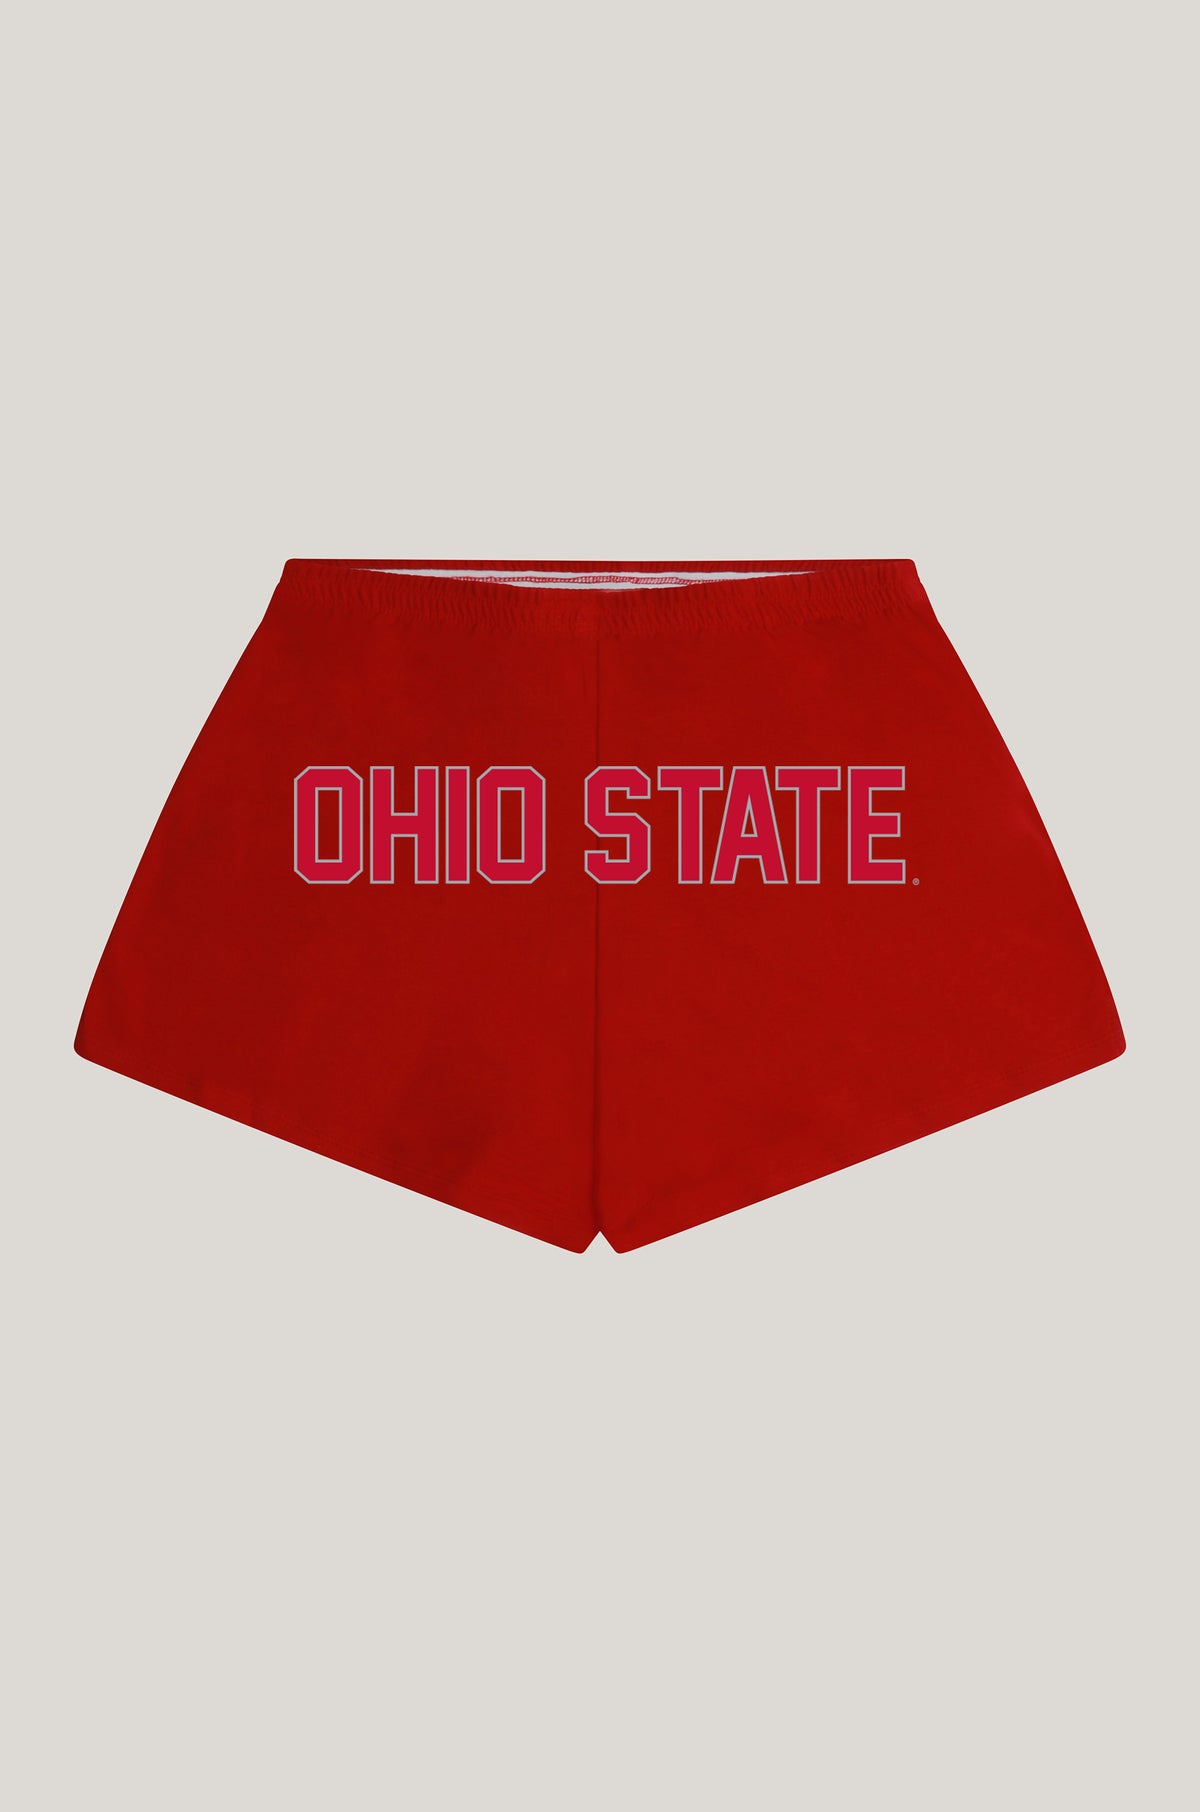 Ohio State P.E. Shorts